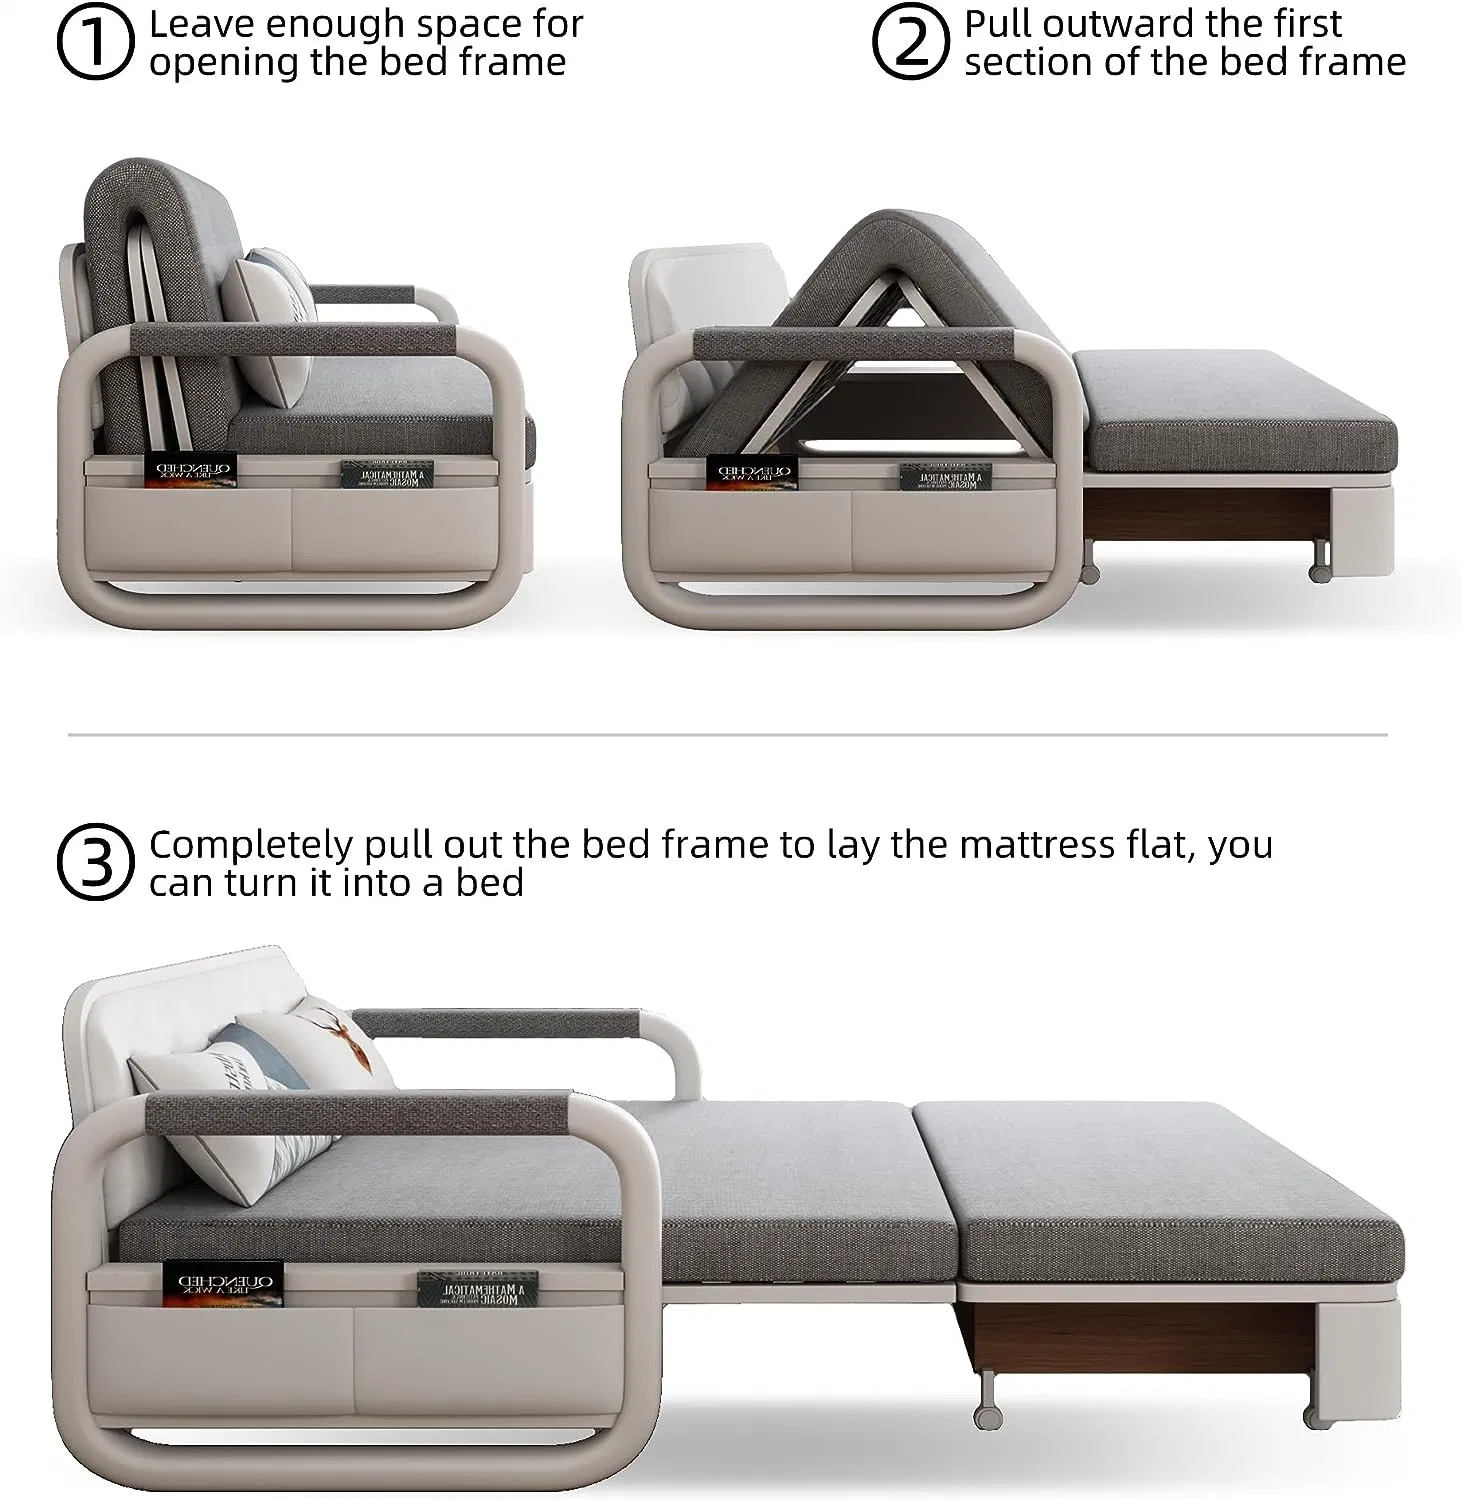 Многофункциональный диван-кровать для гостиной, тканевый складной диван-кровать